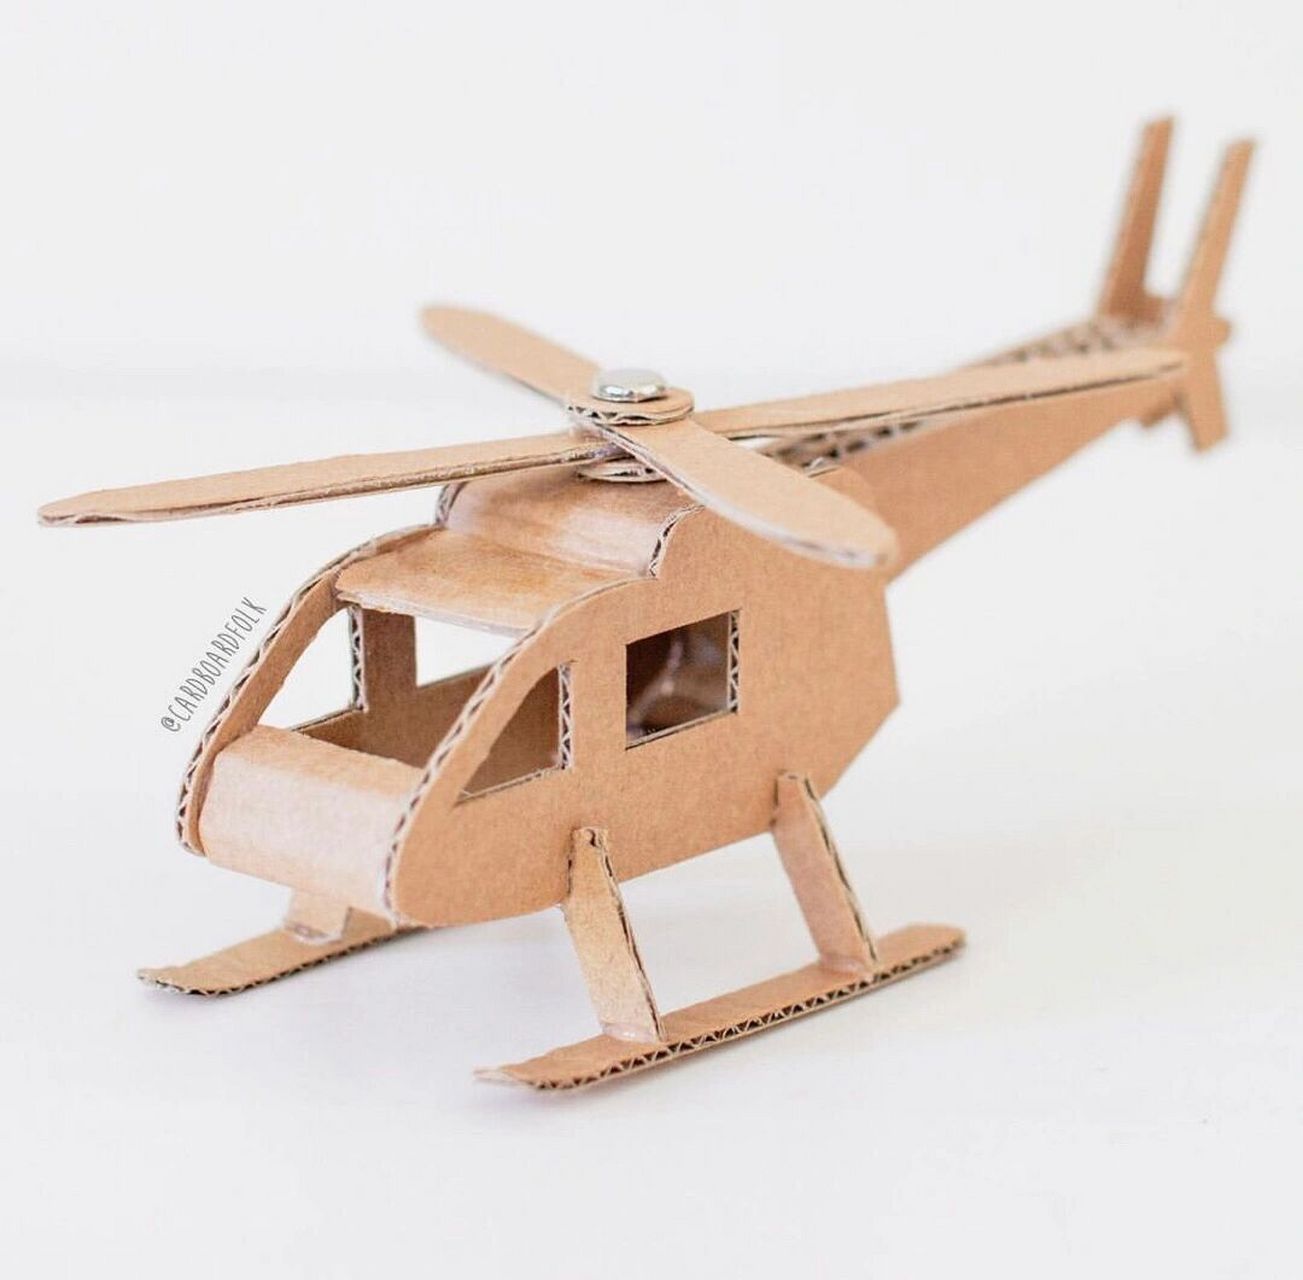 幼儿园亲子手工直升飞机diy教程05 用废旧纸盒做的直升飞机,创意又